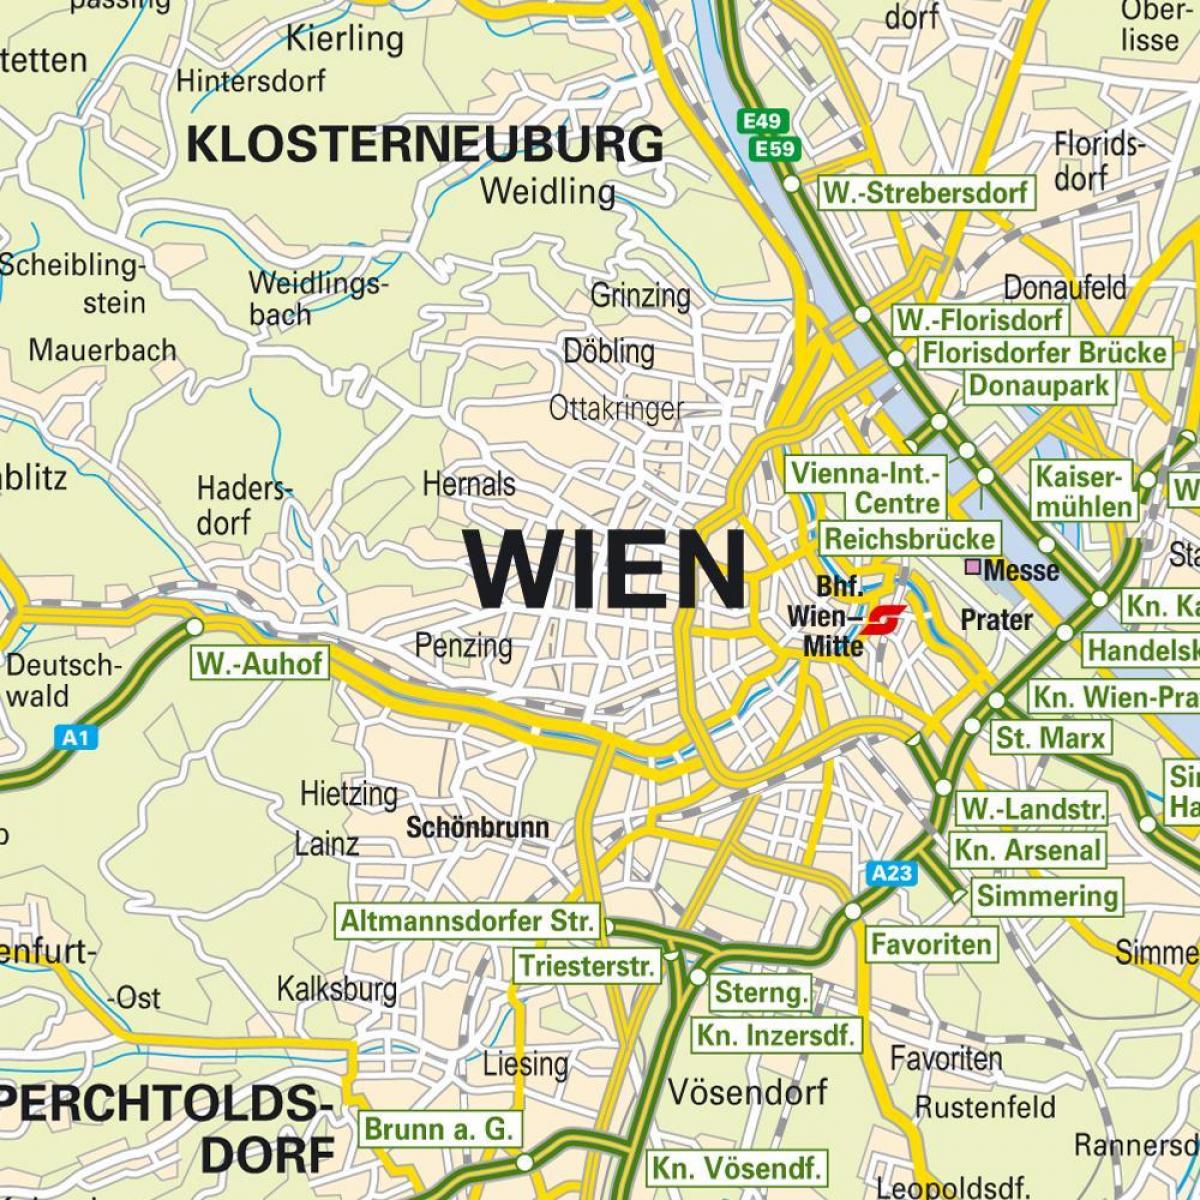 Vienna mga punto ng interes sa mapa